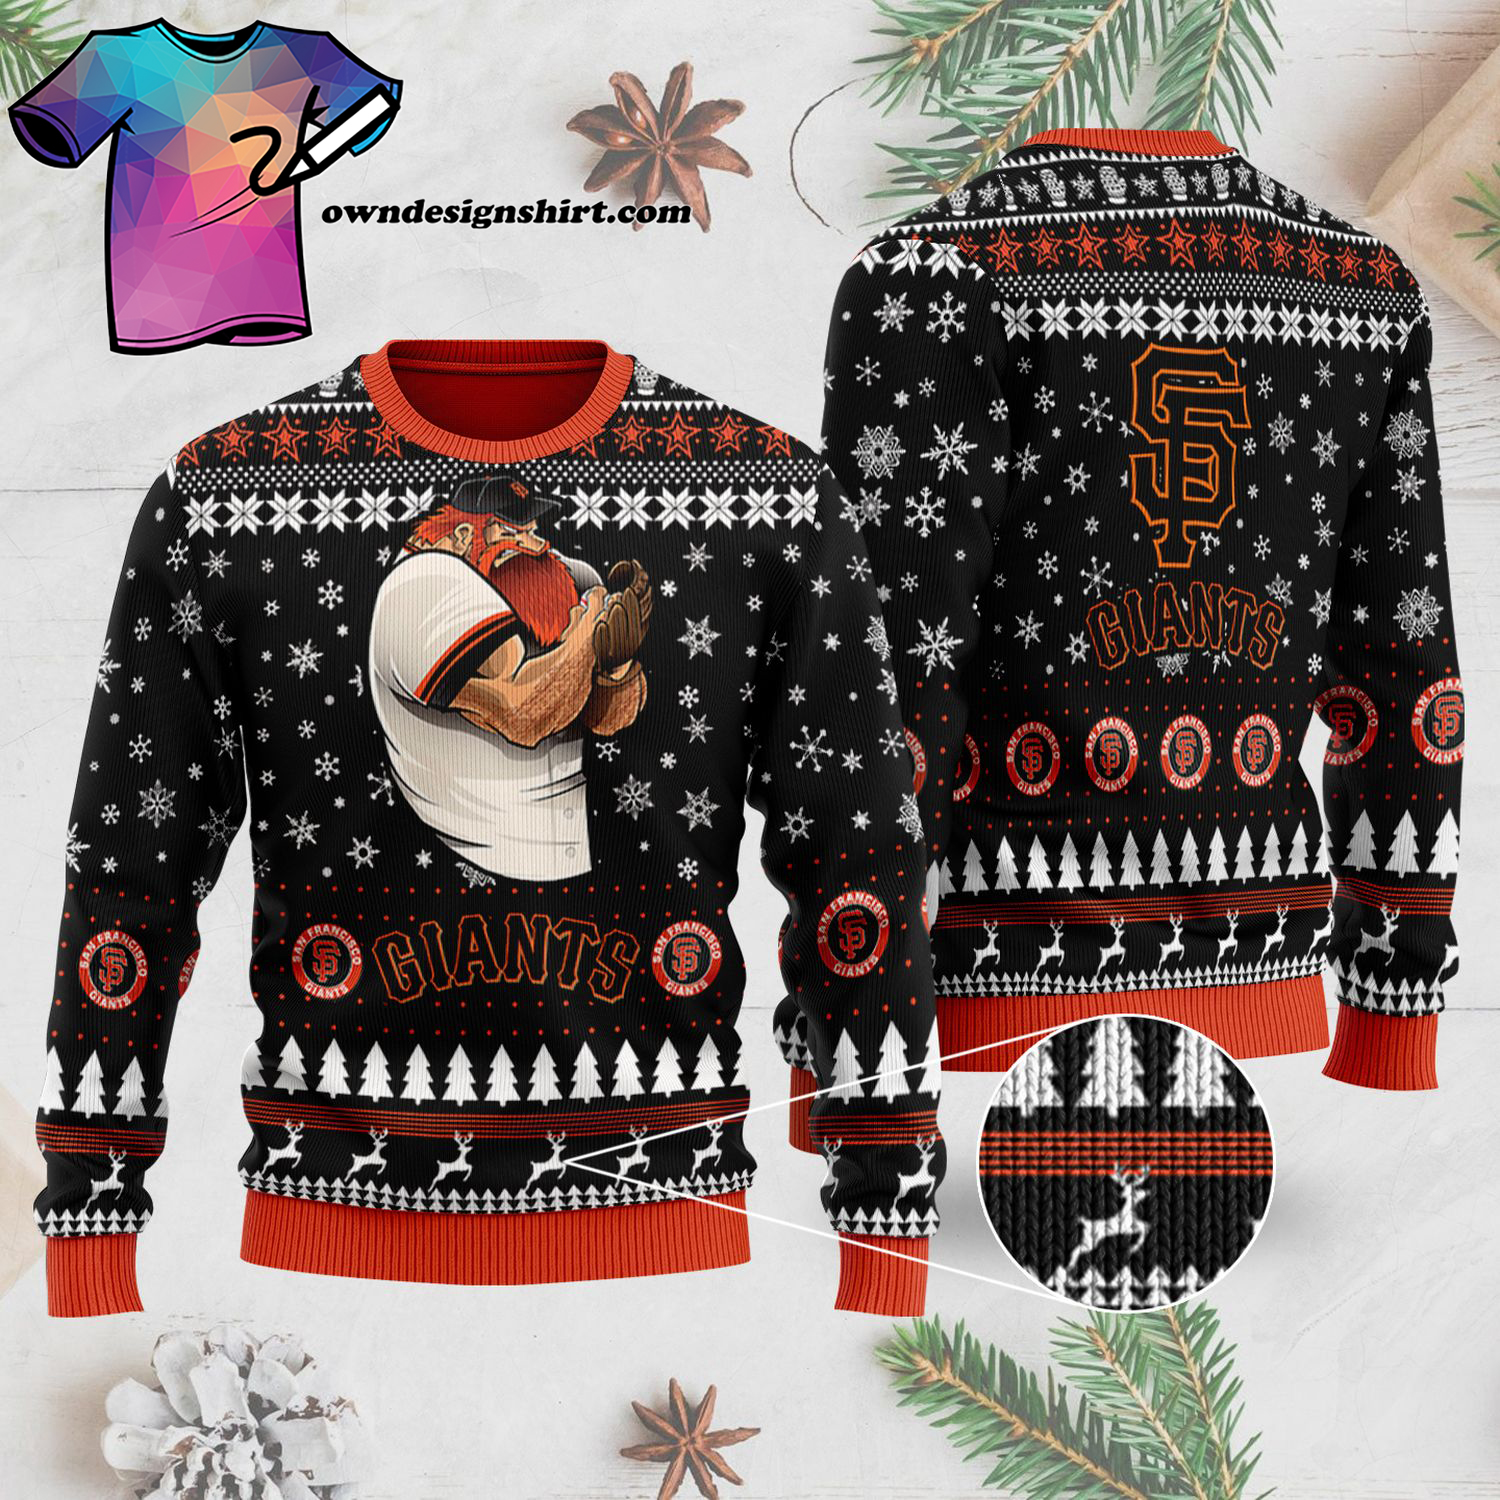 Major League Baseball San Francisco Giants Full Print Ugly Christmas Sweater - Copy